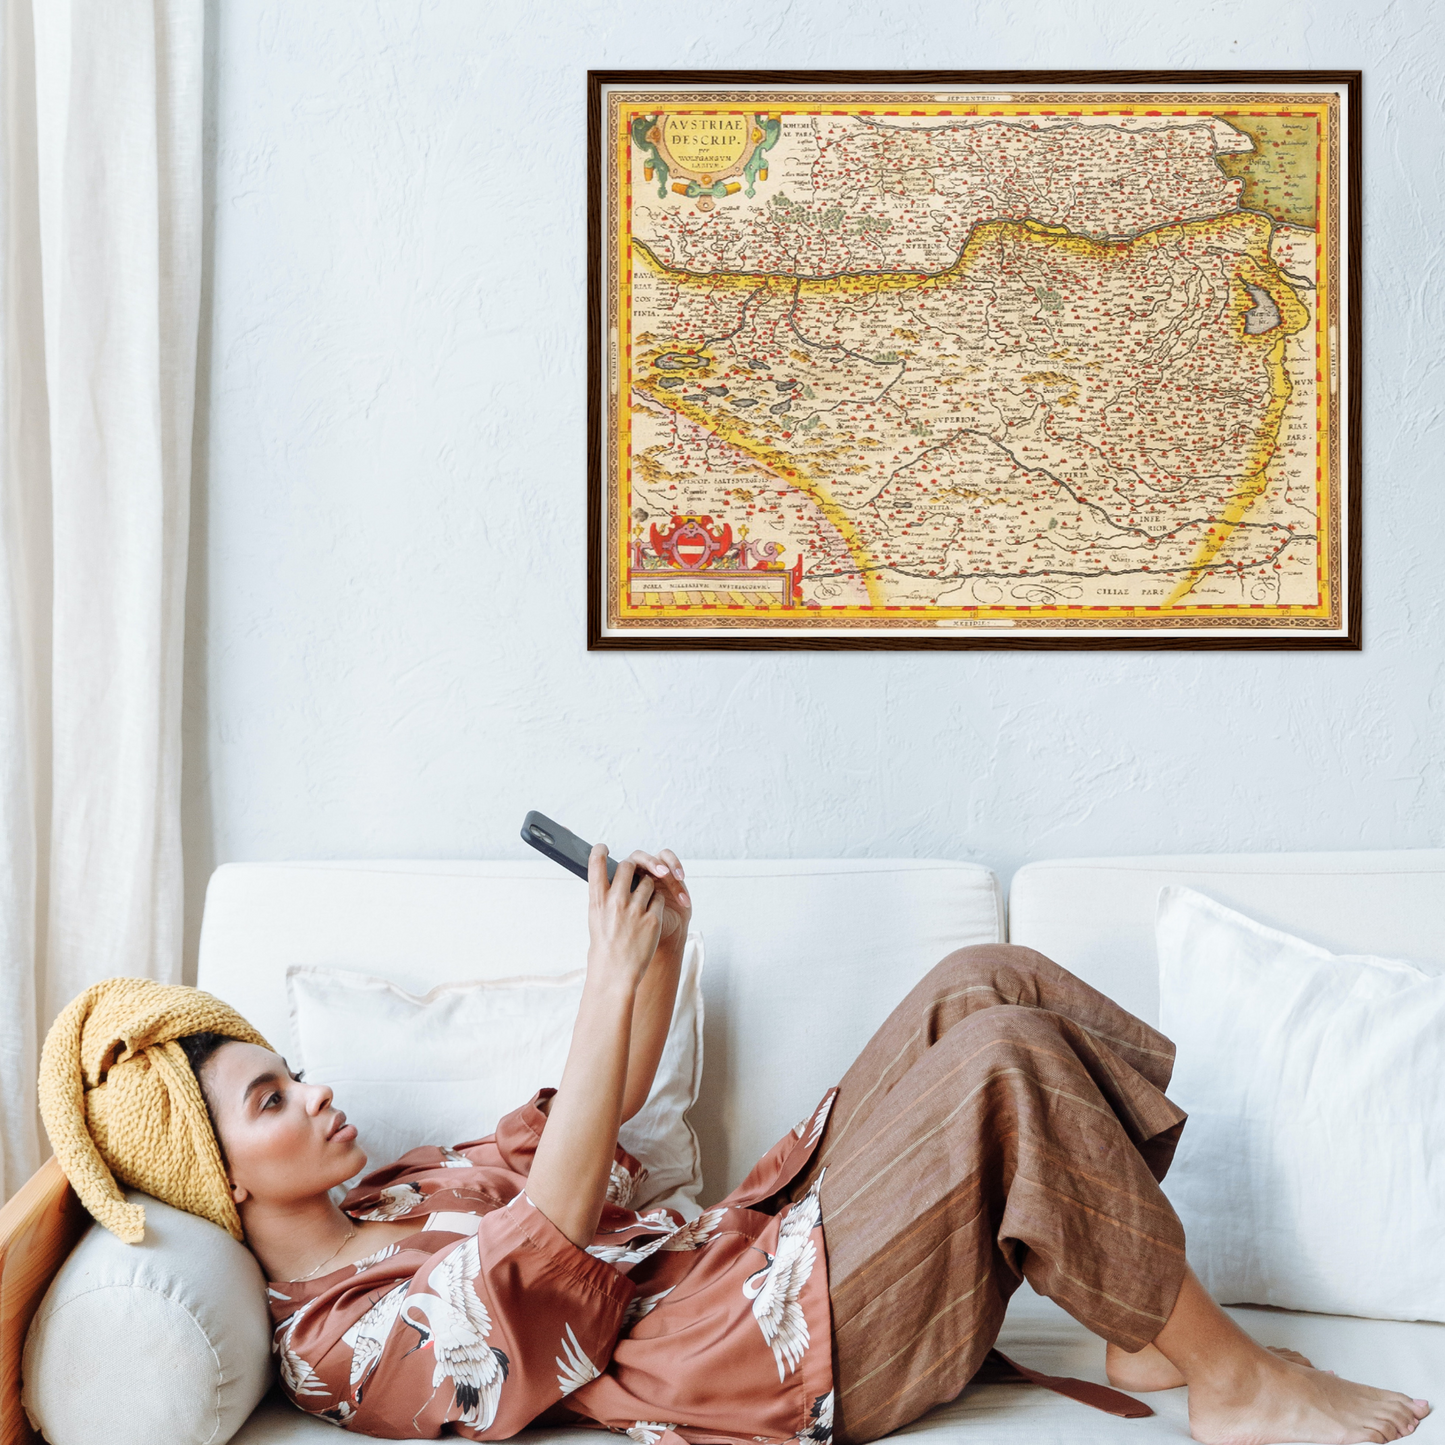 Historische Landkarte Österreich um 1609